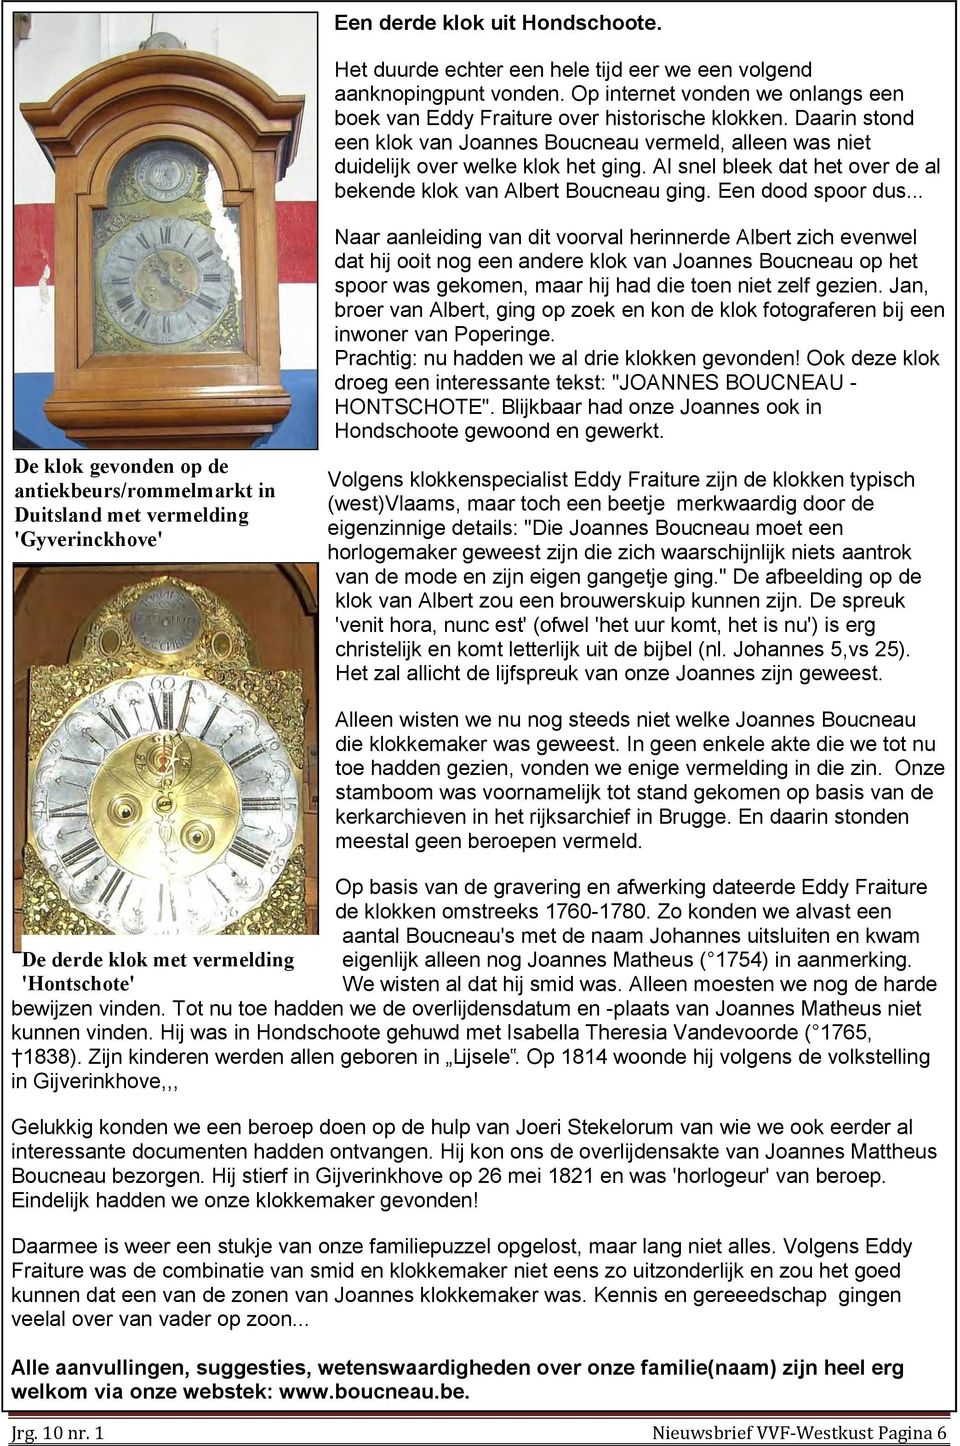 .. De klok gevonden op de antiekbeurs/rommelmarkt in Duitsland met vermelding 'Gyverinckhove' Naar aanleiding van dit voorval herinnerde Albert zich evenwel dat hij ooit nog een andere klok van